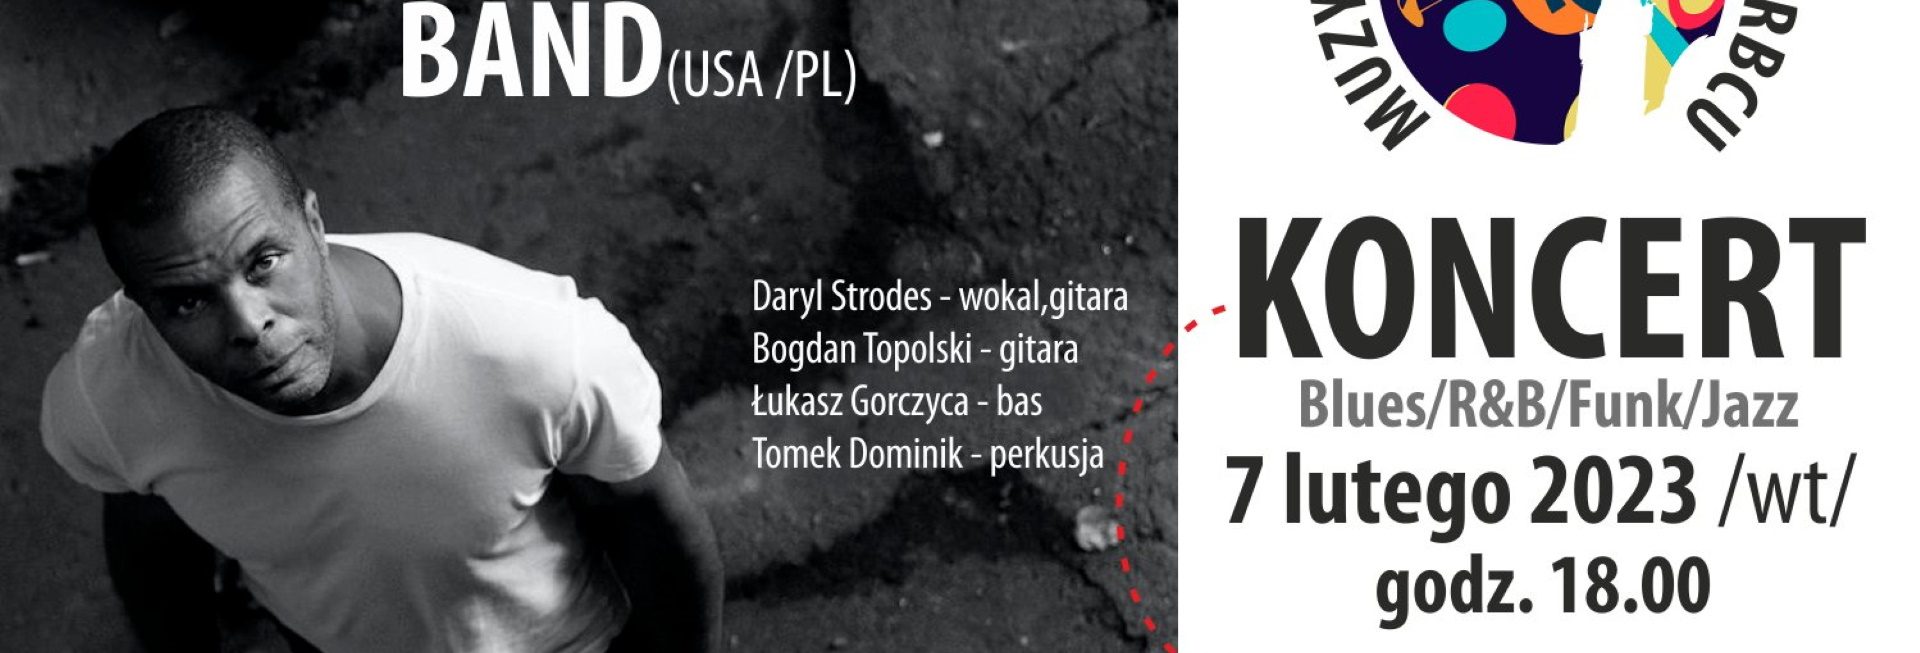 Plakat zapraszający we wtorek 7 lutego 2023 r. do Barczewa na koncert DARYL STRODES - Muzyczne Spotkania w Skarbcu Barczewo 2023.